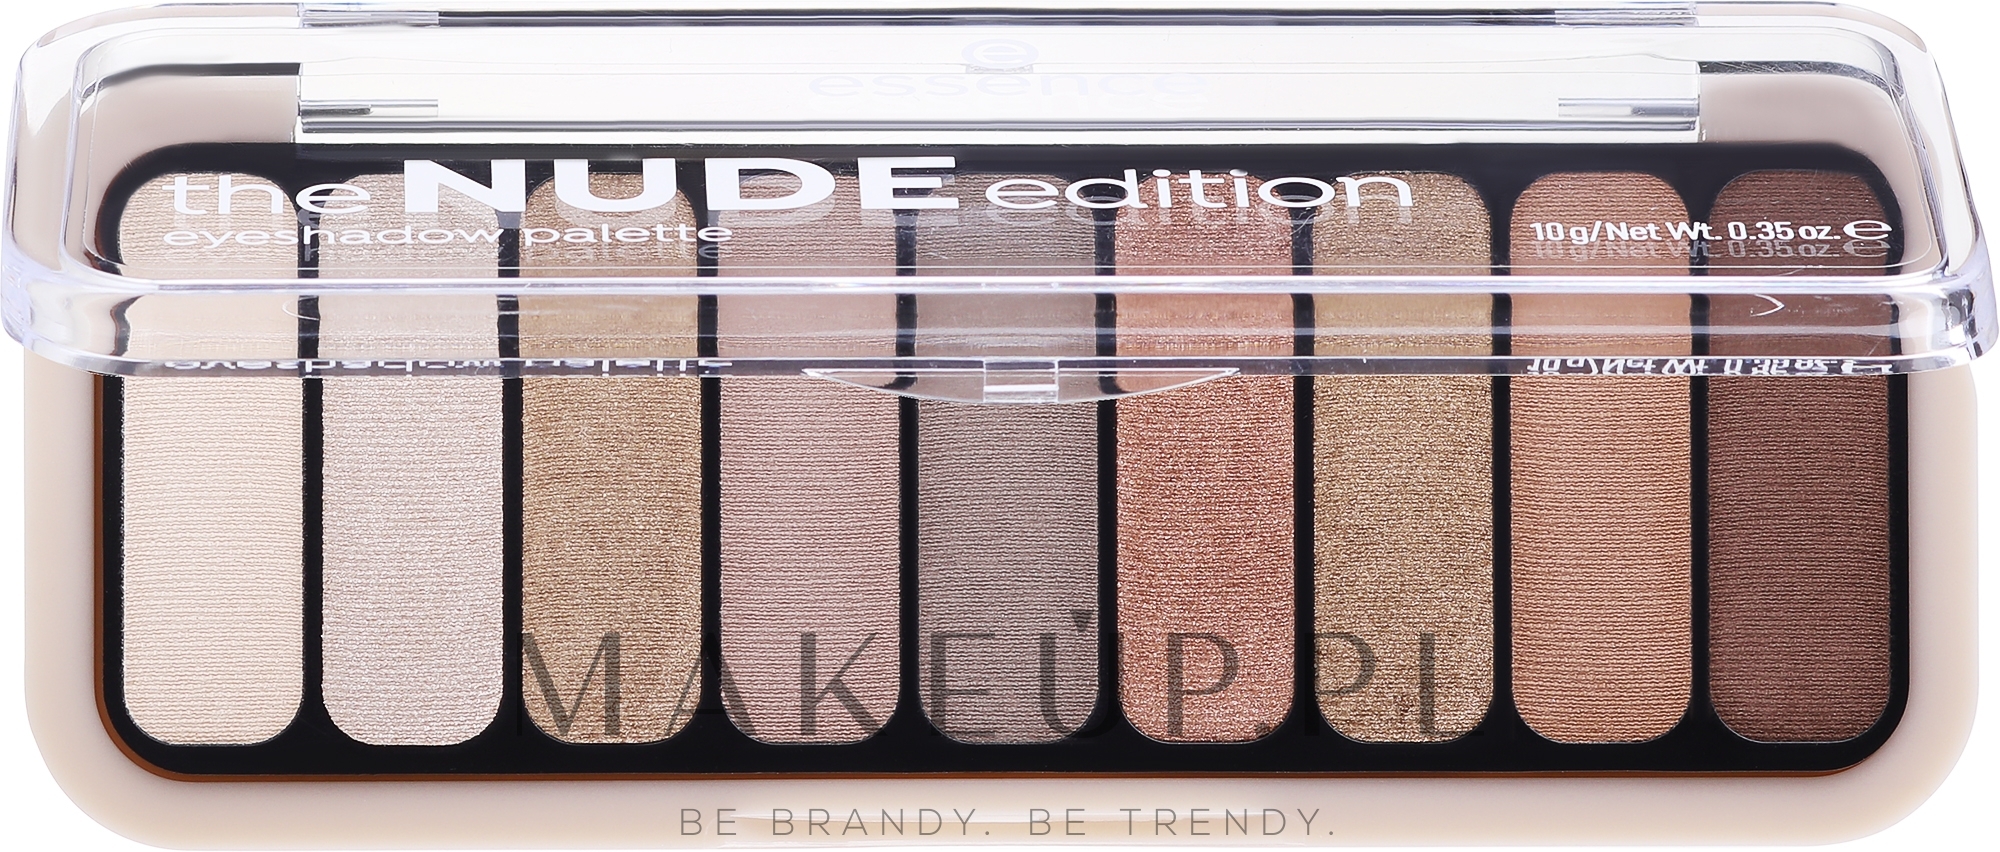 Paletka cieni do powiek - Essence The Nude Edition Eyeshadow Palette — Zdjęcie 10 g